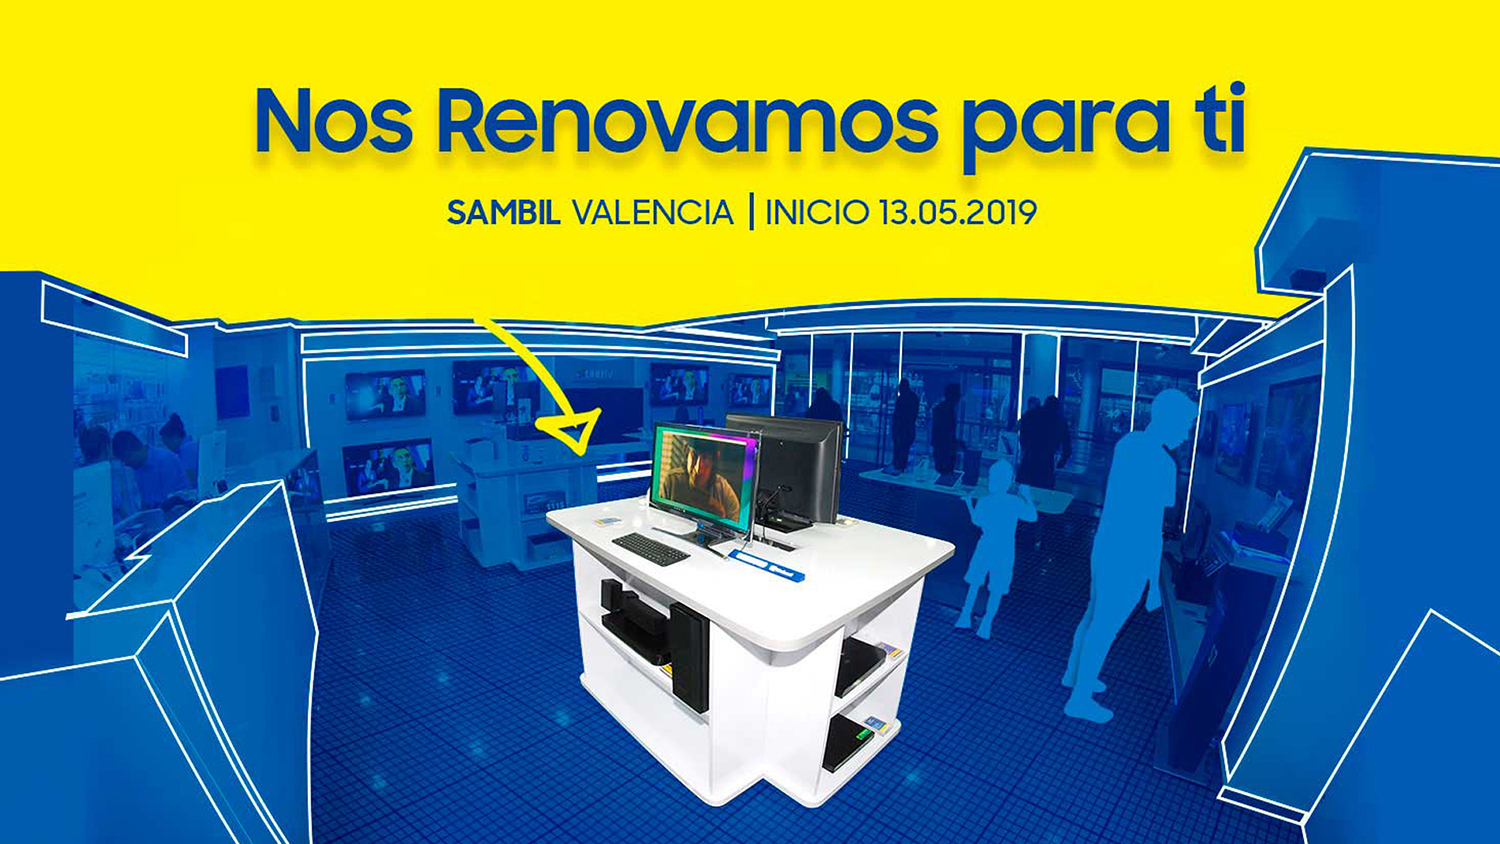 CLX Samsung renovará su sede de Sambil Valencia